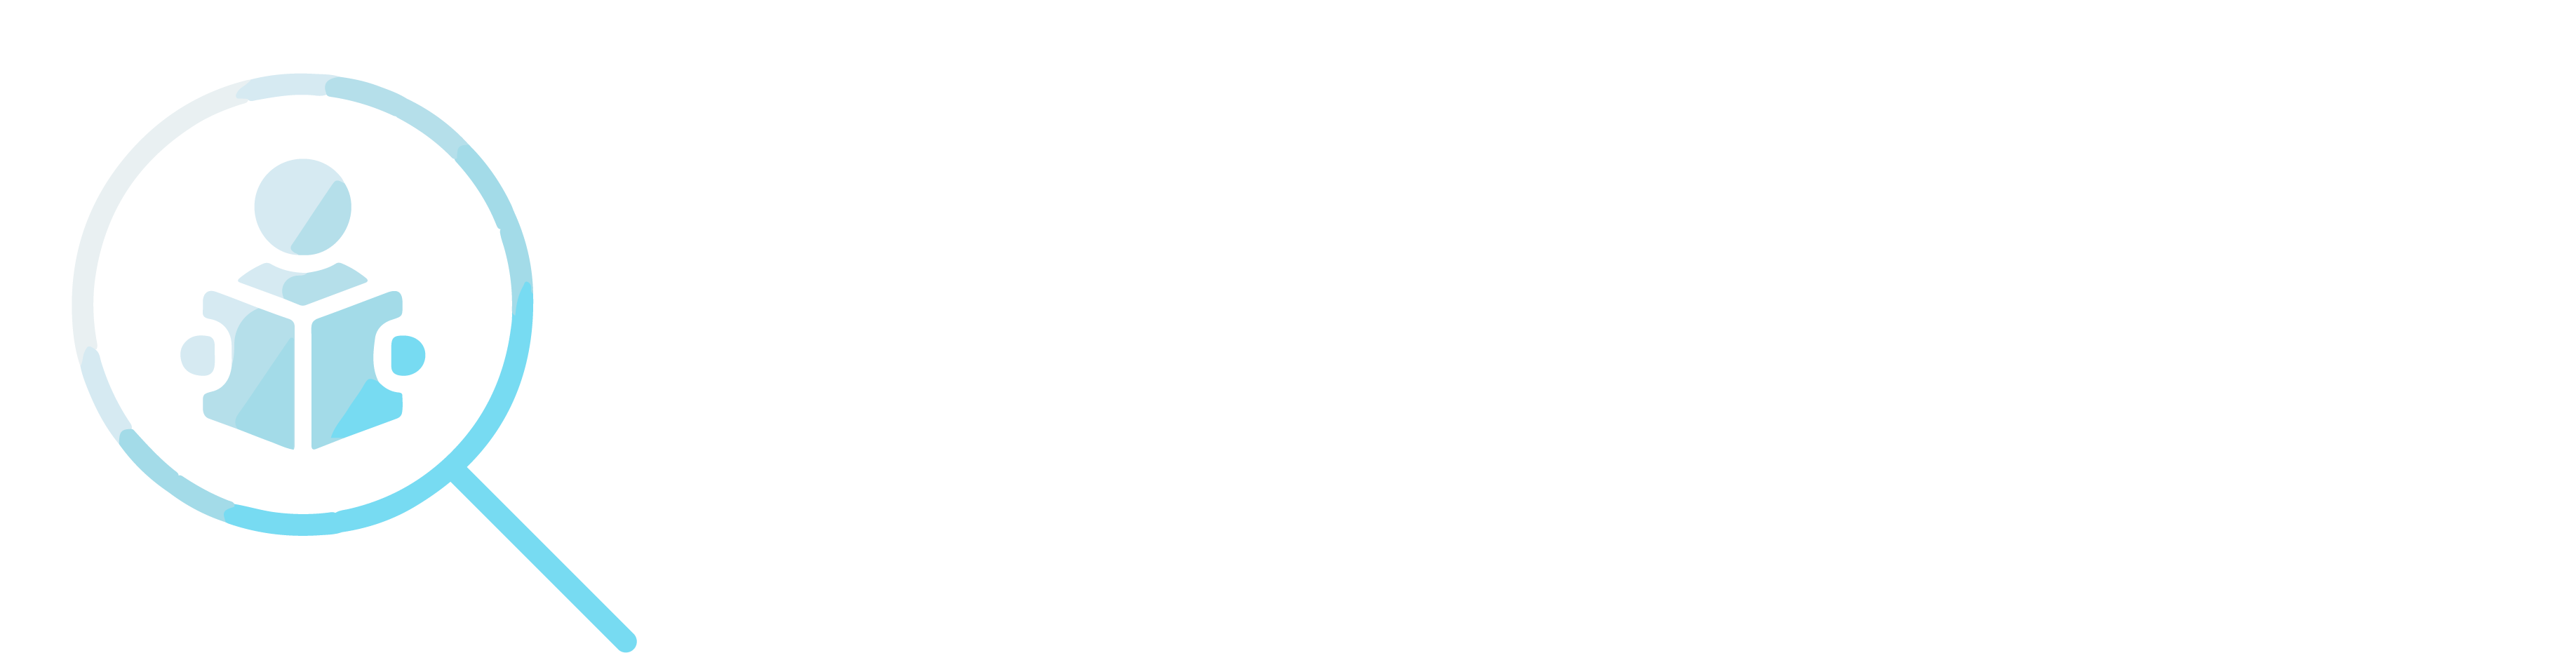 Casual Relief Teaching - airTeachr platform logo